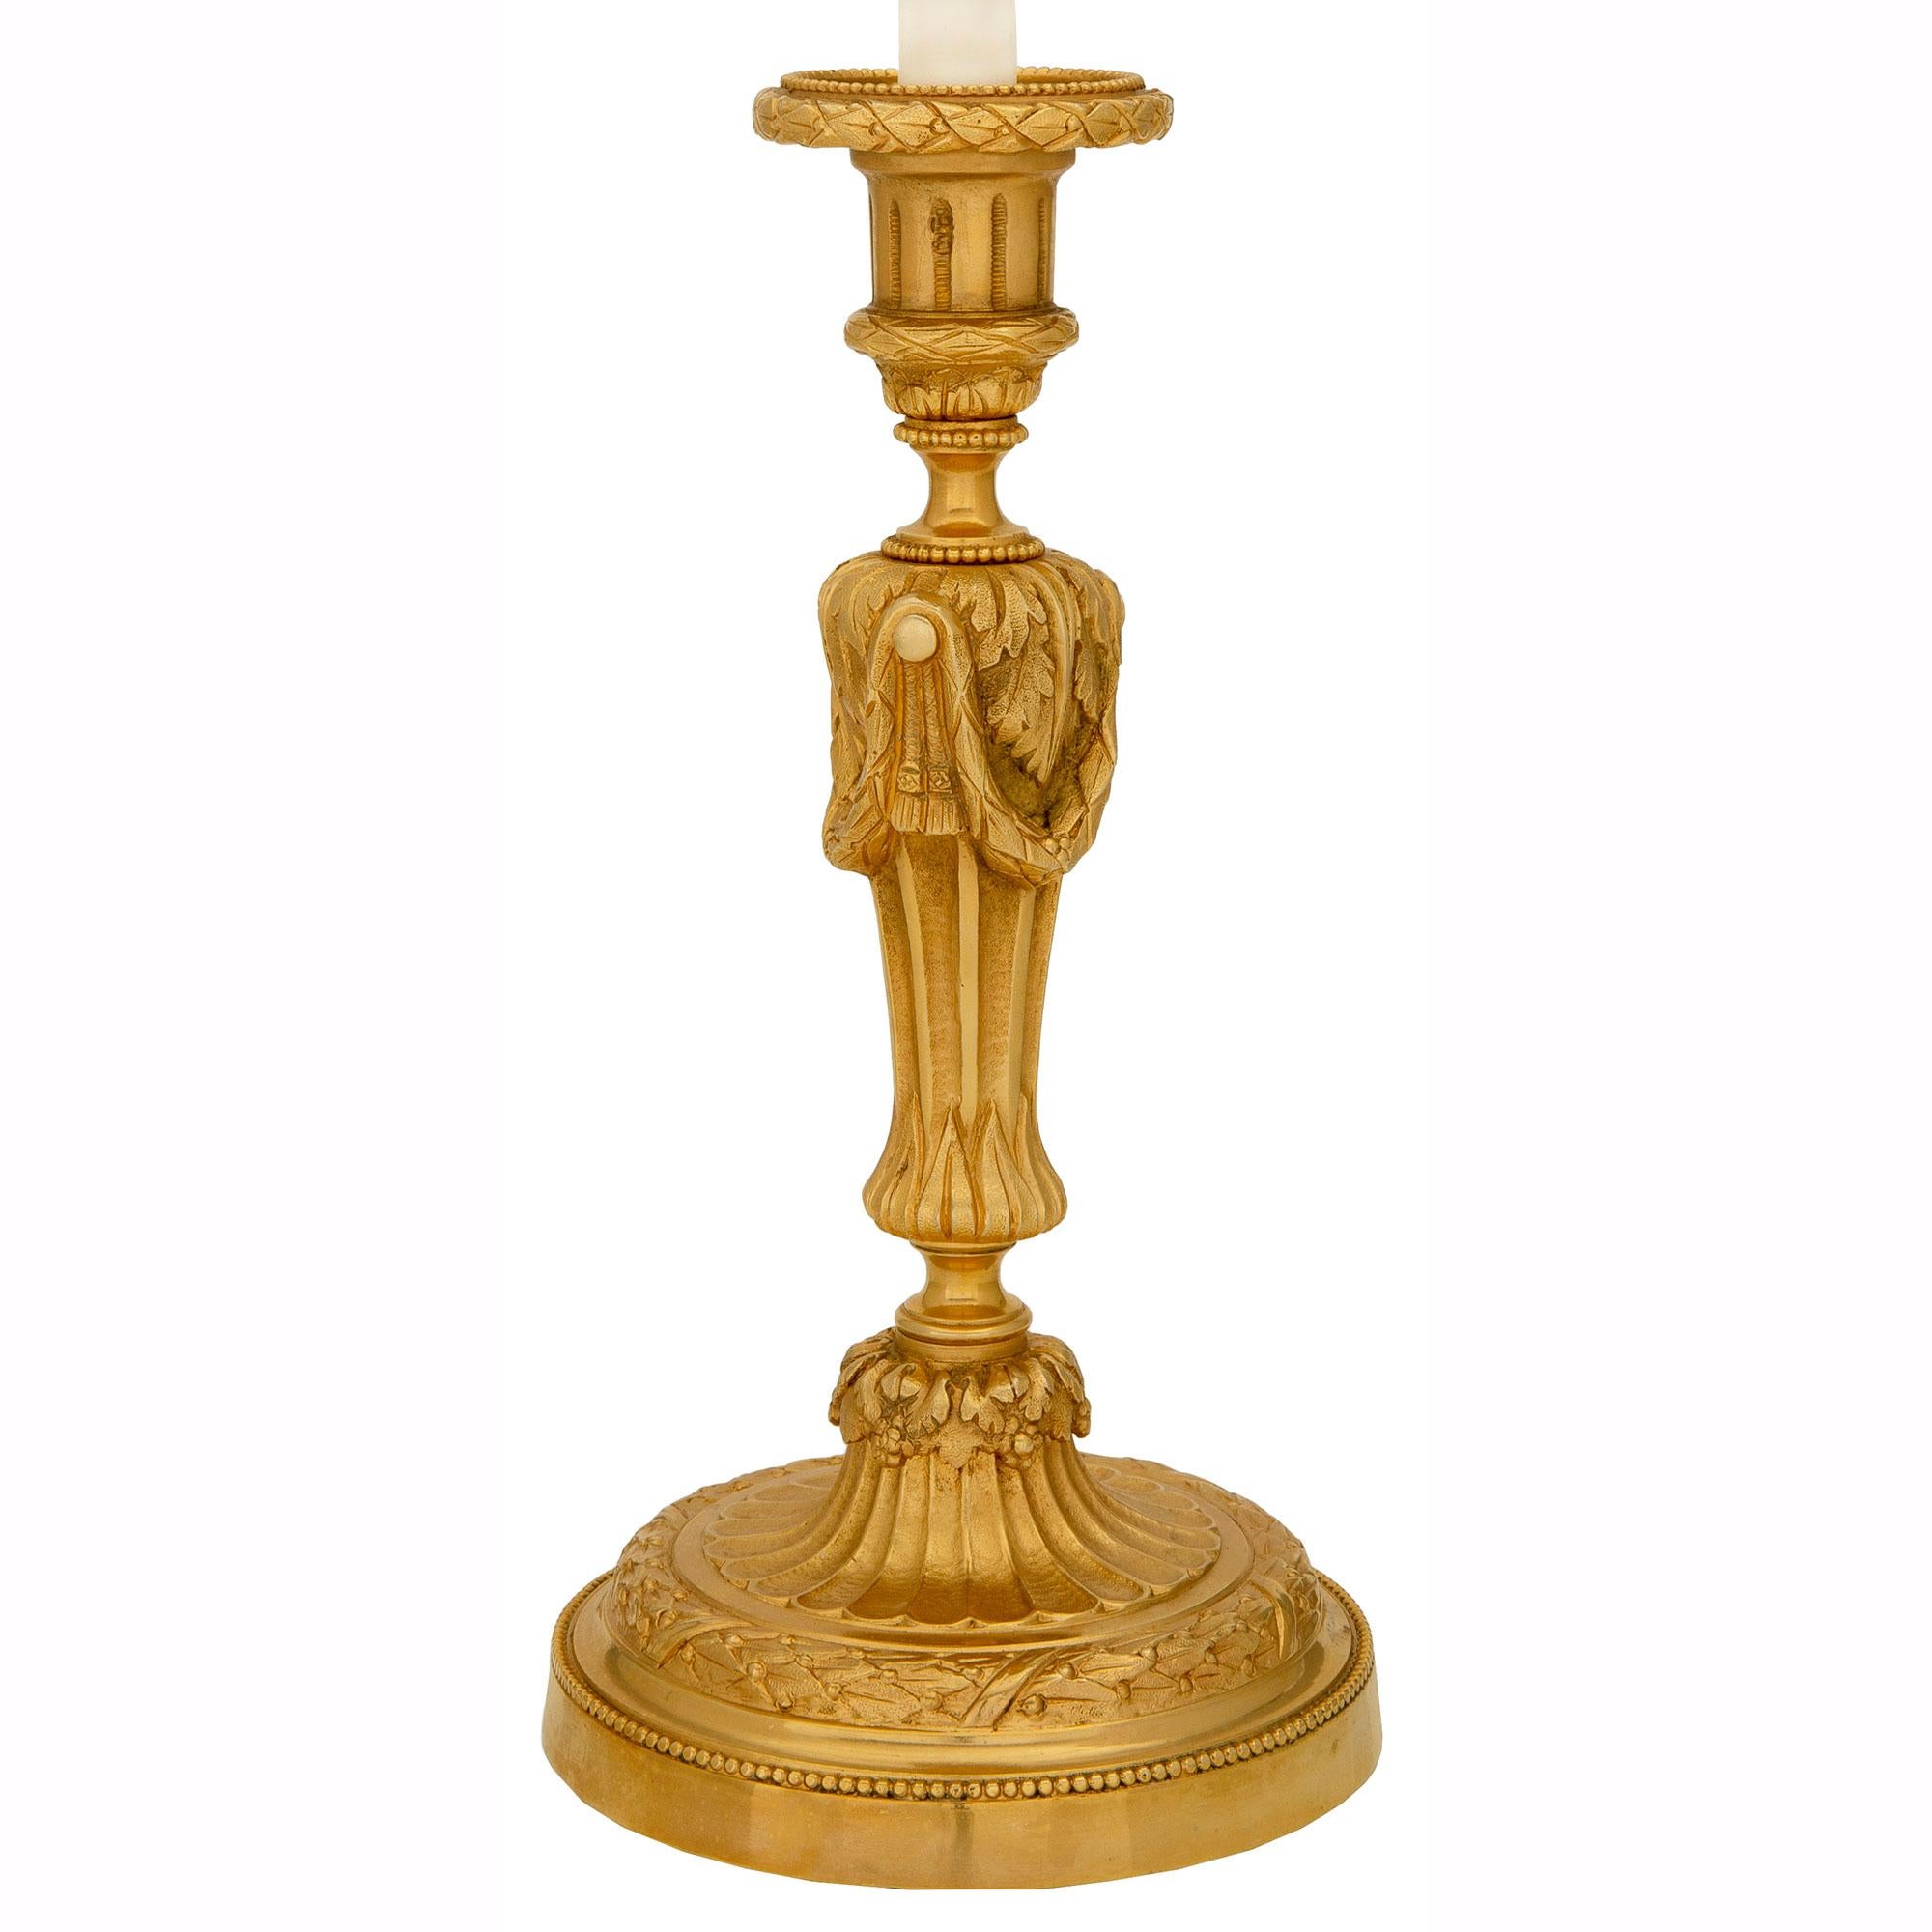 Une paire élégante et de haute qualité de chandeliers en bronze doré de style Louis XVI et d'époque Belle Époque. Chaque chandelier est surélevé par une base circulaire avec une fine bande perlée et une couronne de laurier liée richement ciselée.